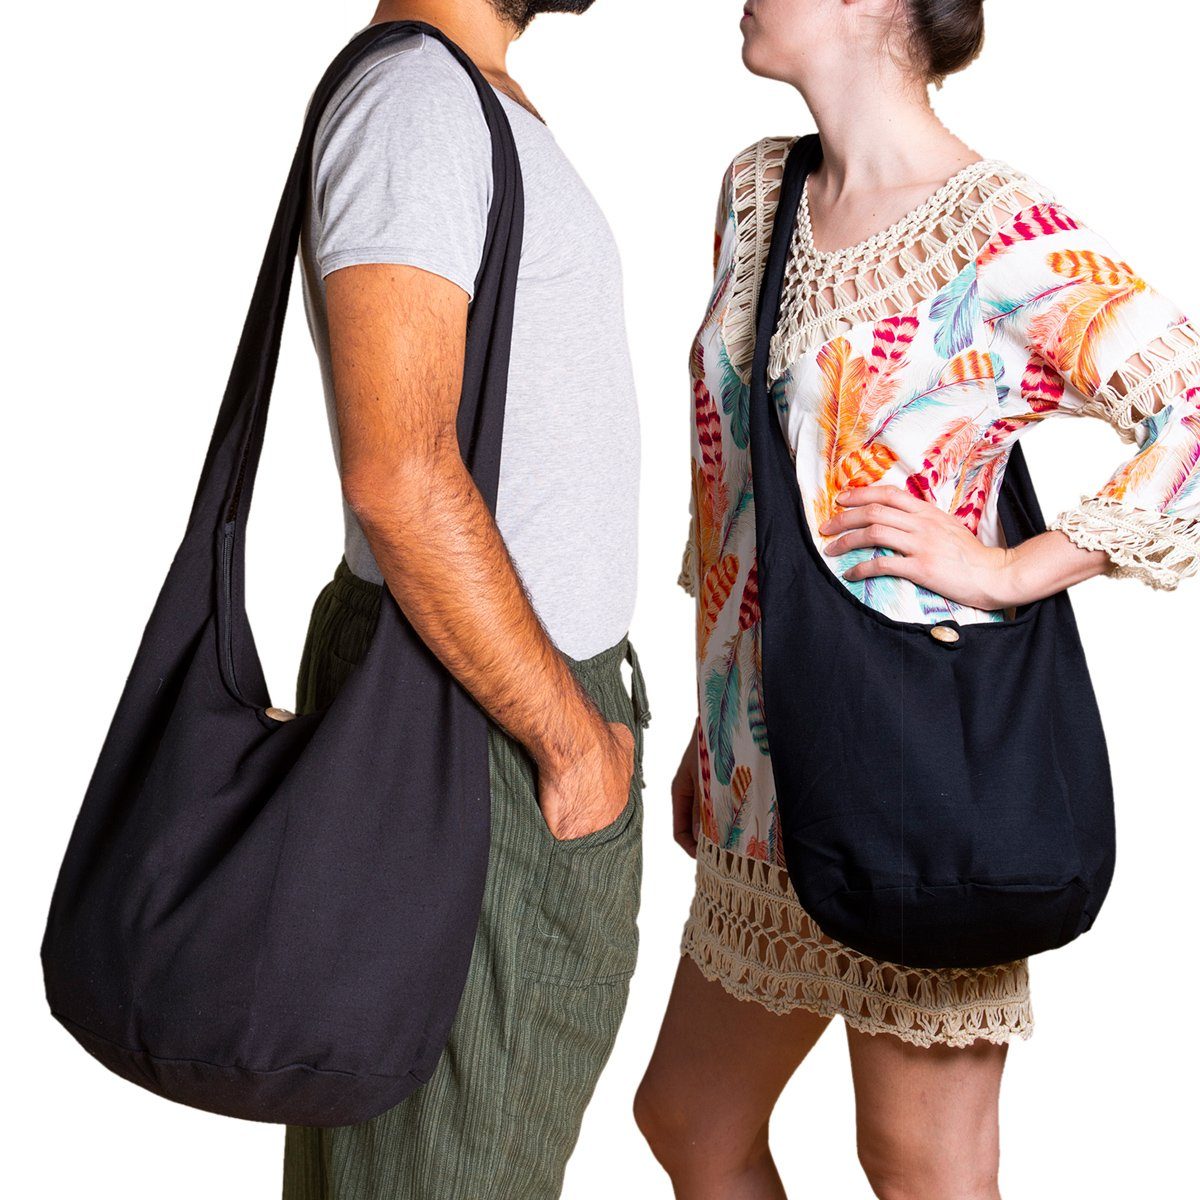 Schultertasche Rot Strandtasche Größen, PANASIAM 2 auch aus 100% Schulterbeutel Umhängetasche oder Handtasche als Wickeltasche Beuteltasche einfarbig in Baumwolle